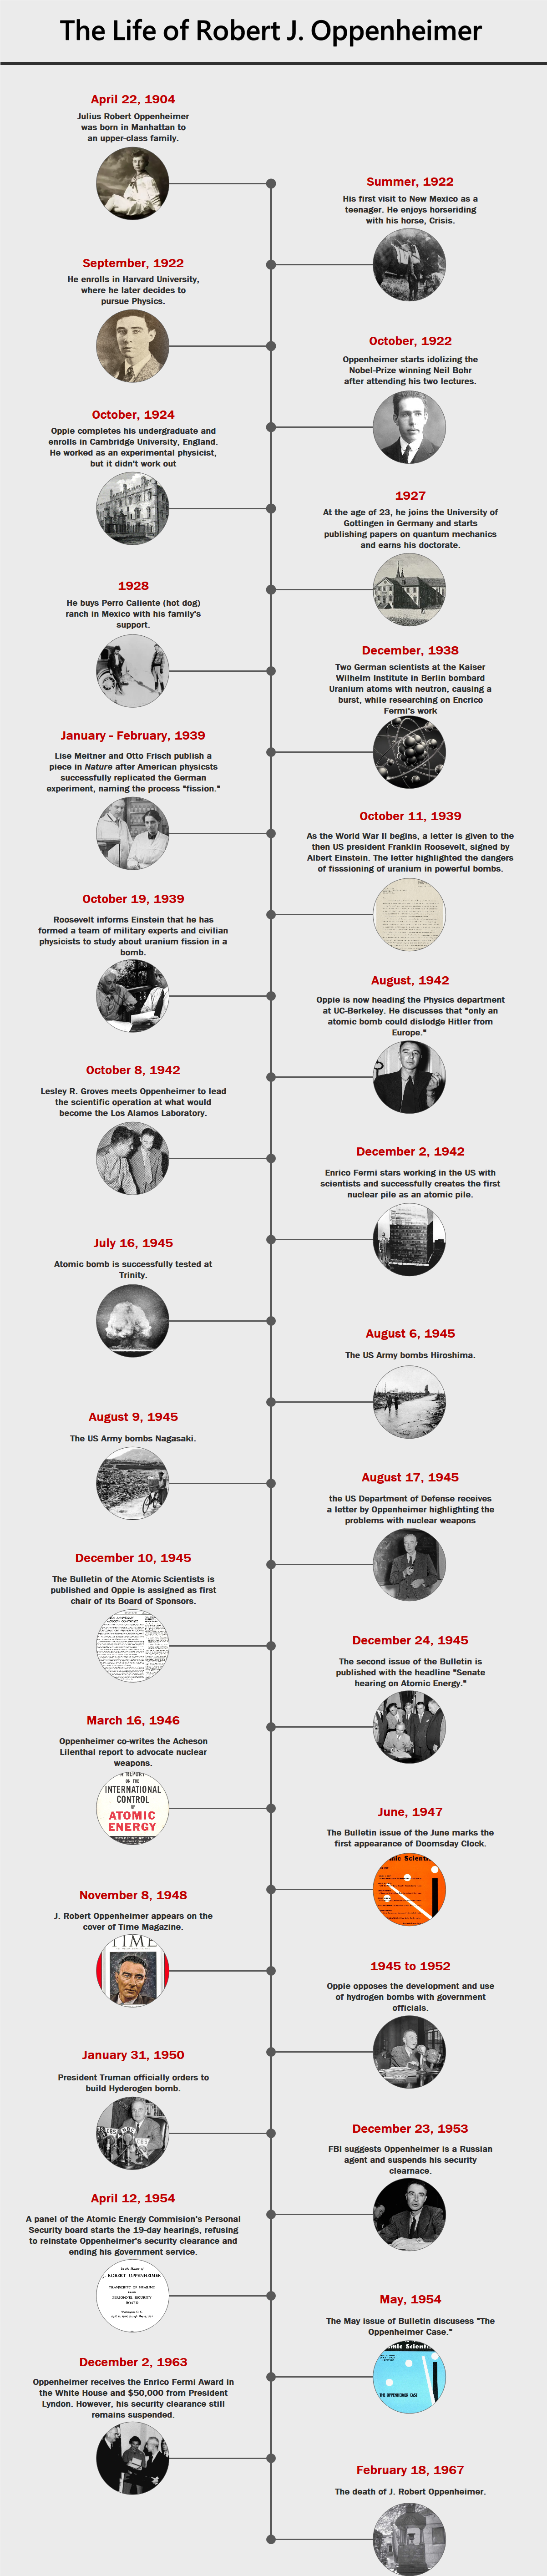 Robert Oppenheimer life timeline